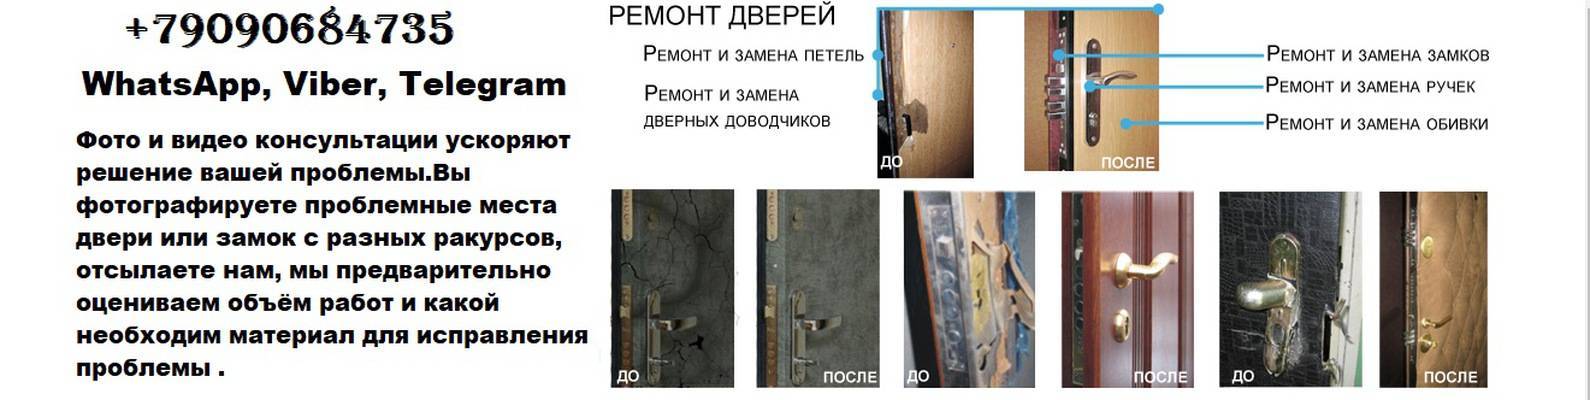 Как отреставрировать входную железную дверь - причины ремонта и материалы реставрация входной железной двери - виды ремонта и материалы